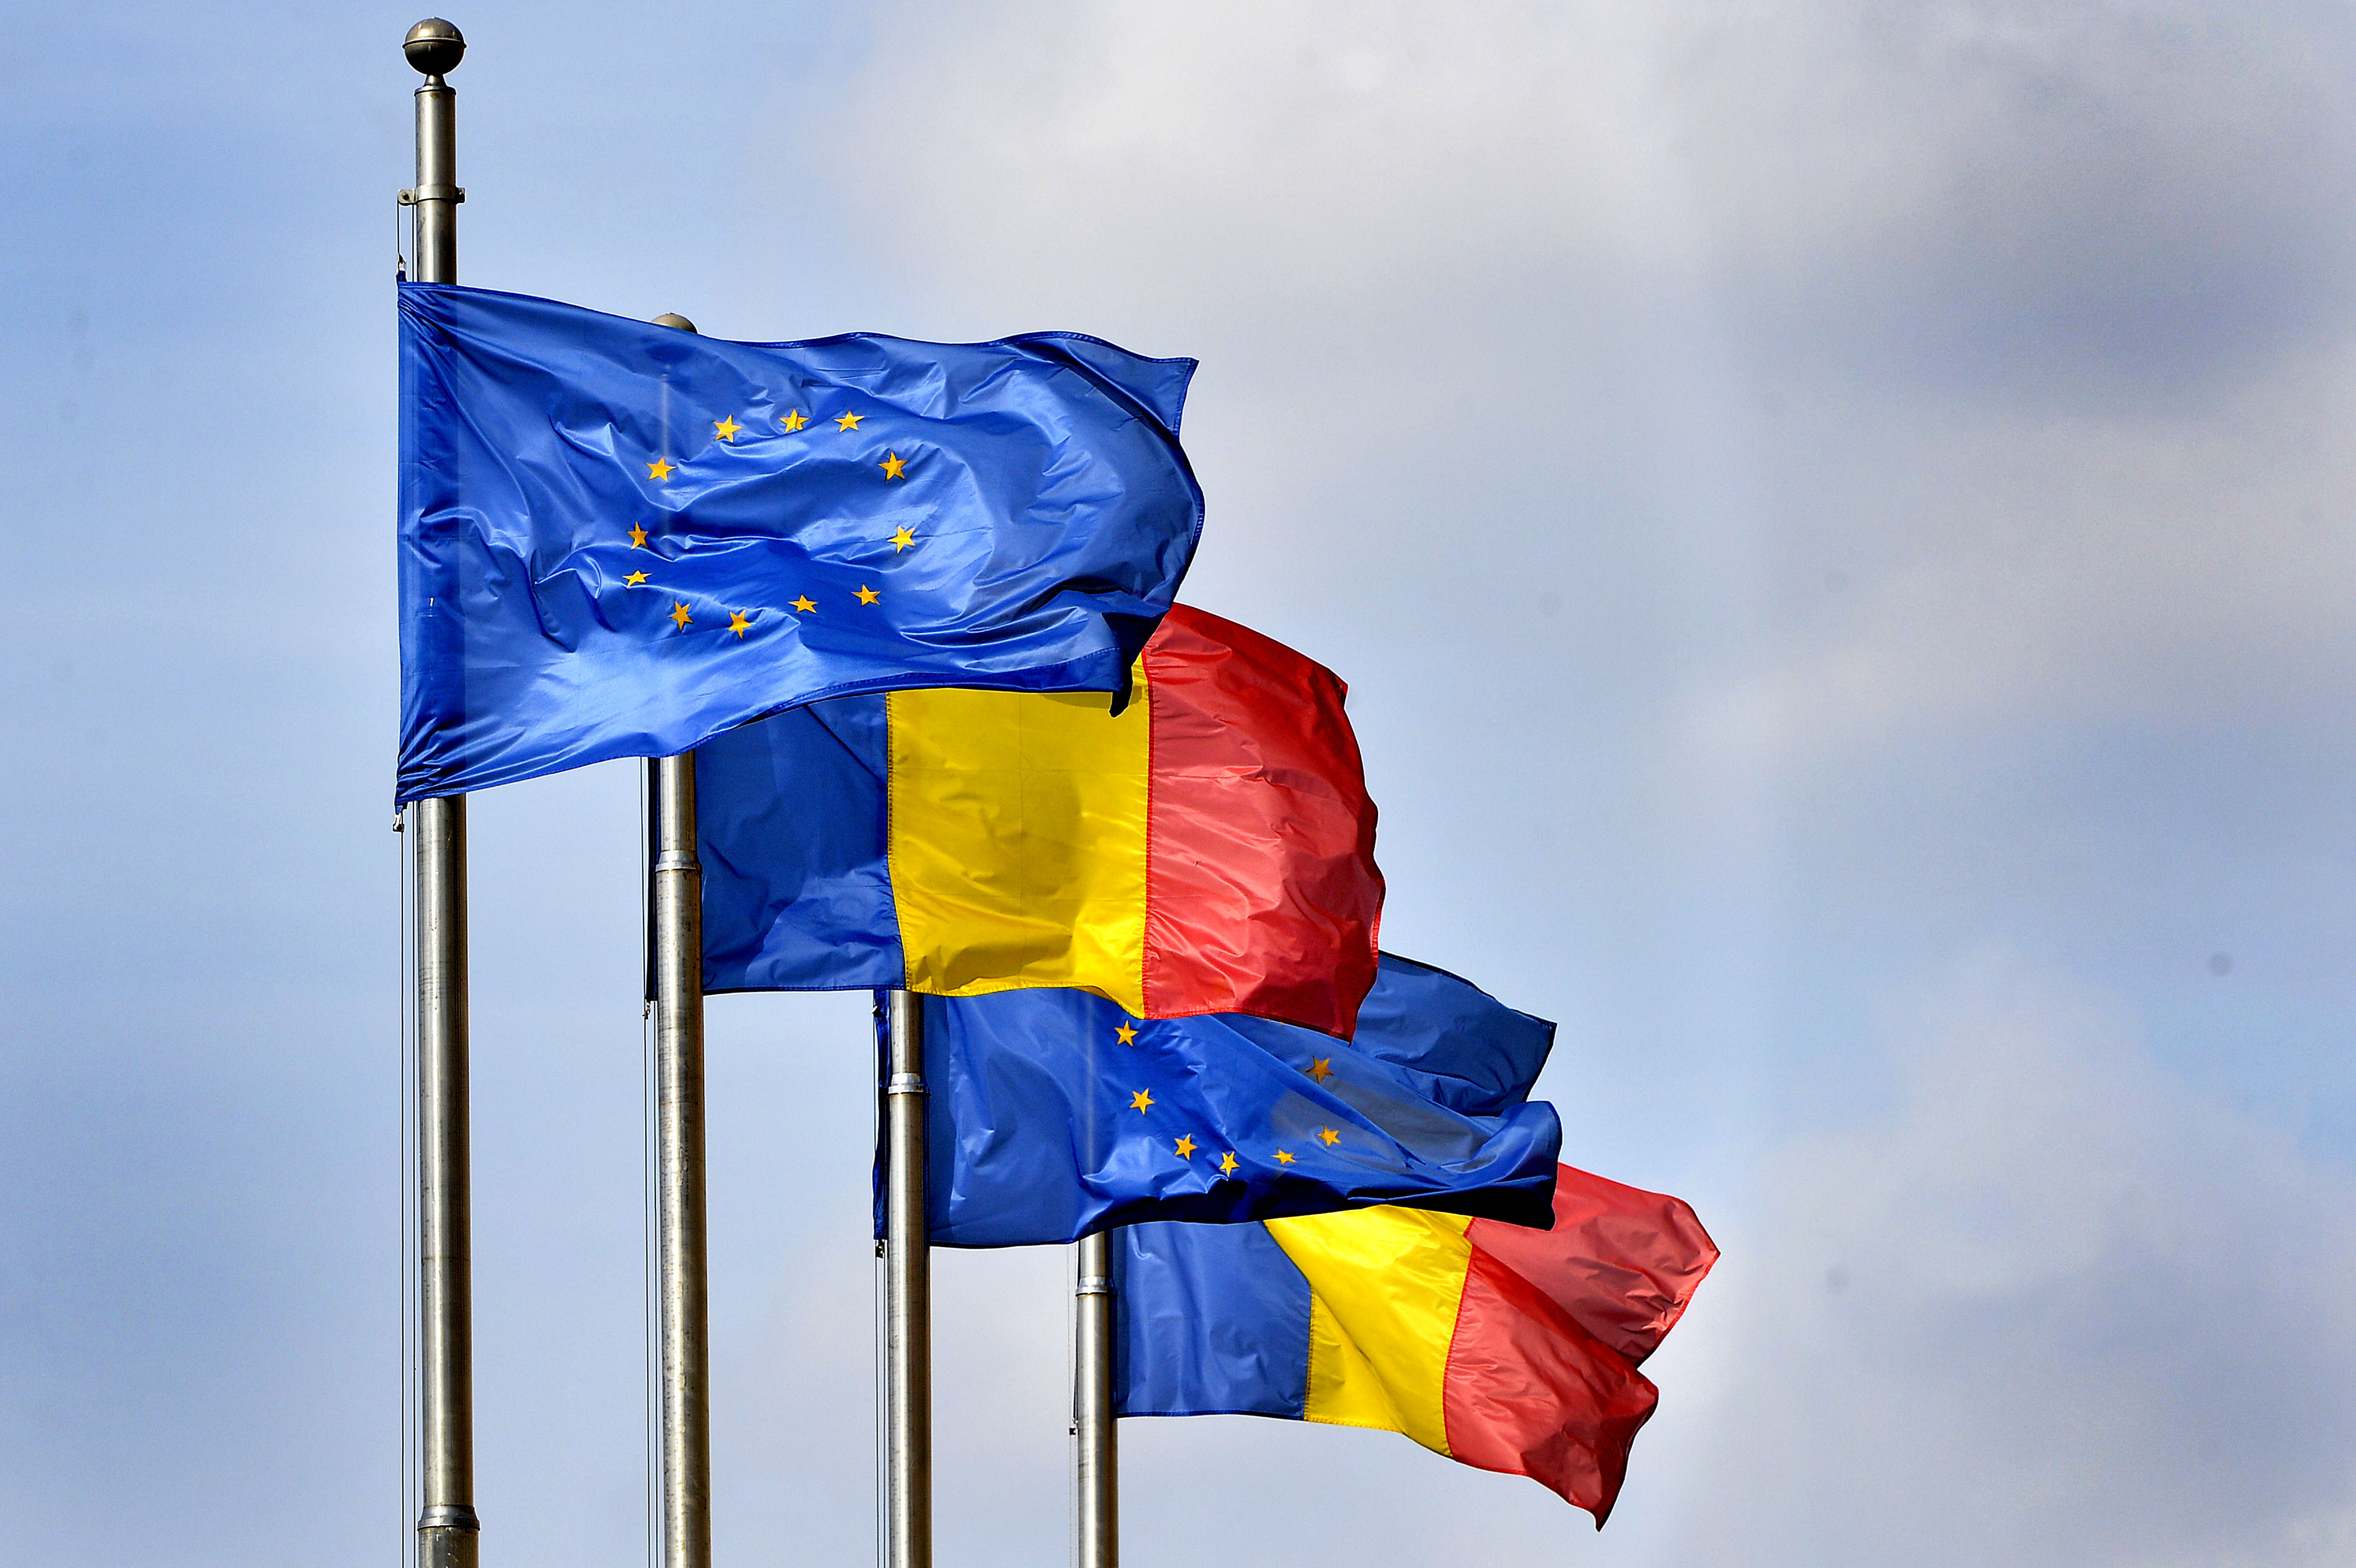 9 mai, semnificaţie multiplă pentru români: Ziua Europei şi Ziua Independenţei de Stat a României